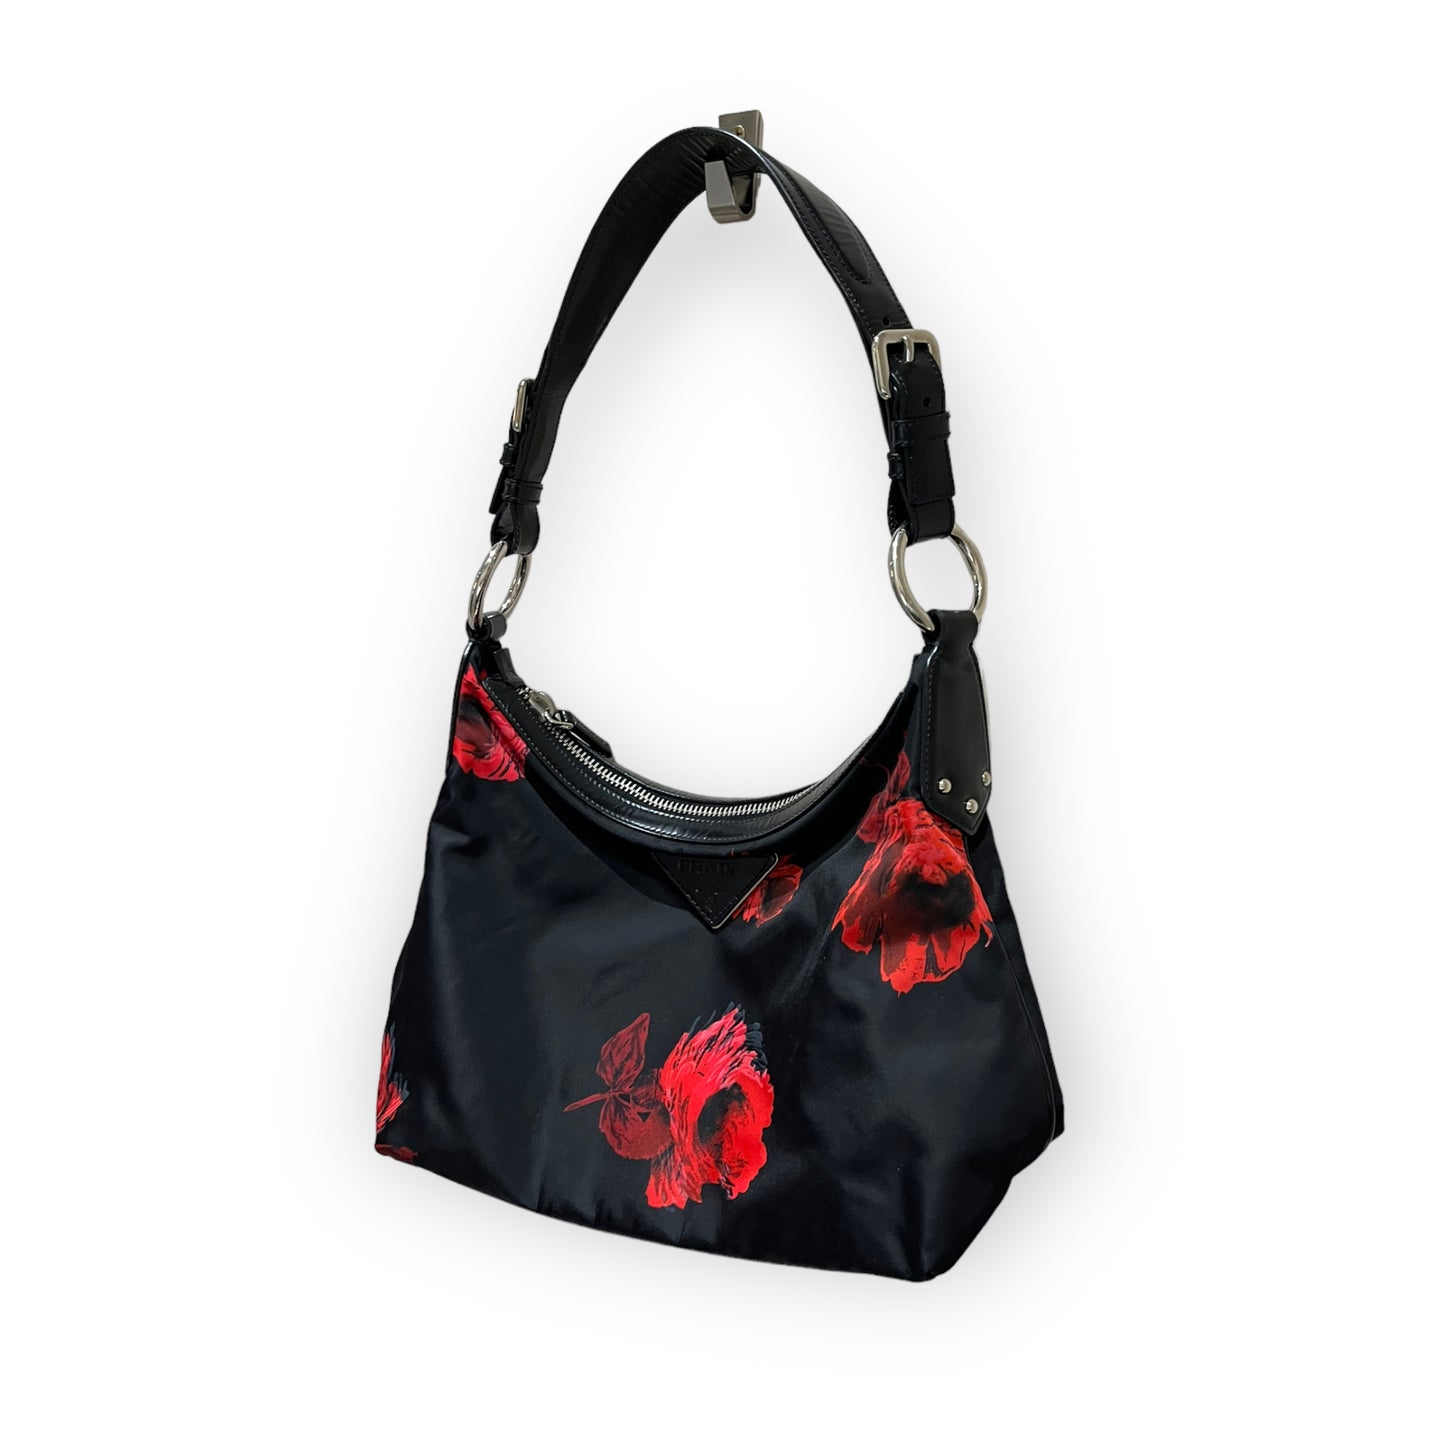 Prada Black and Red Rose Bag